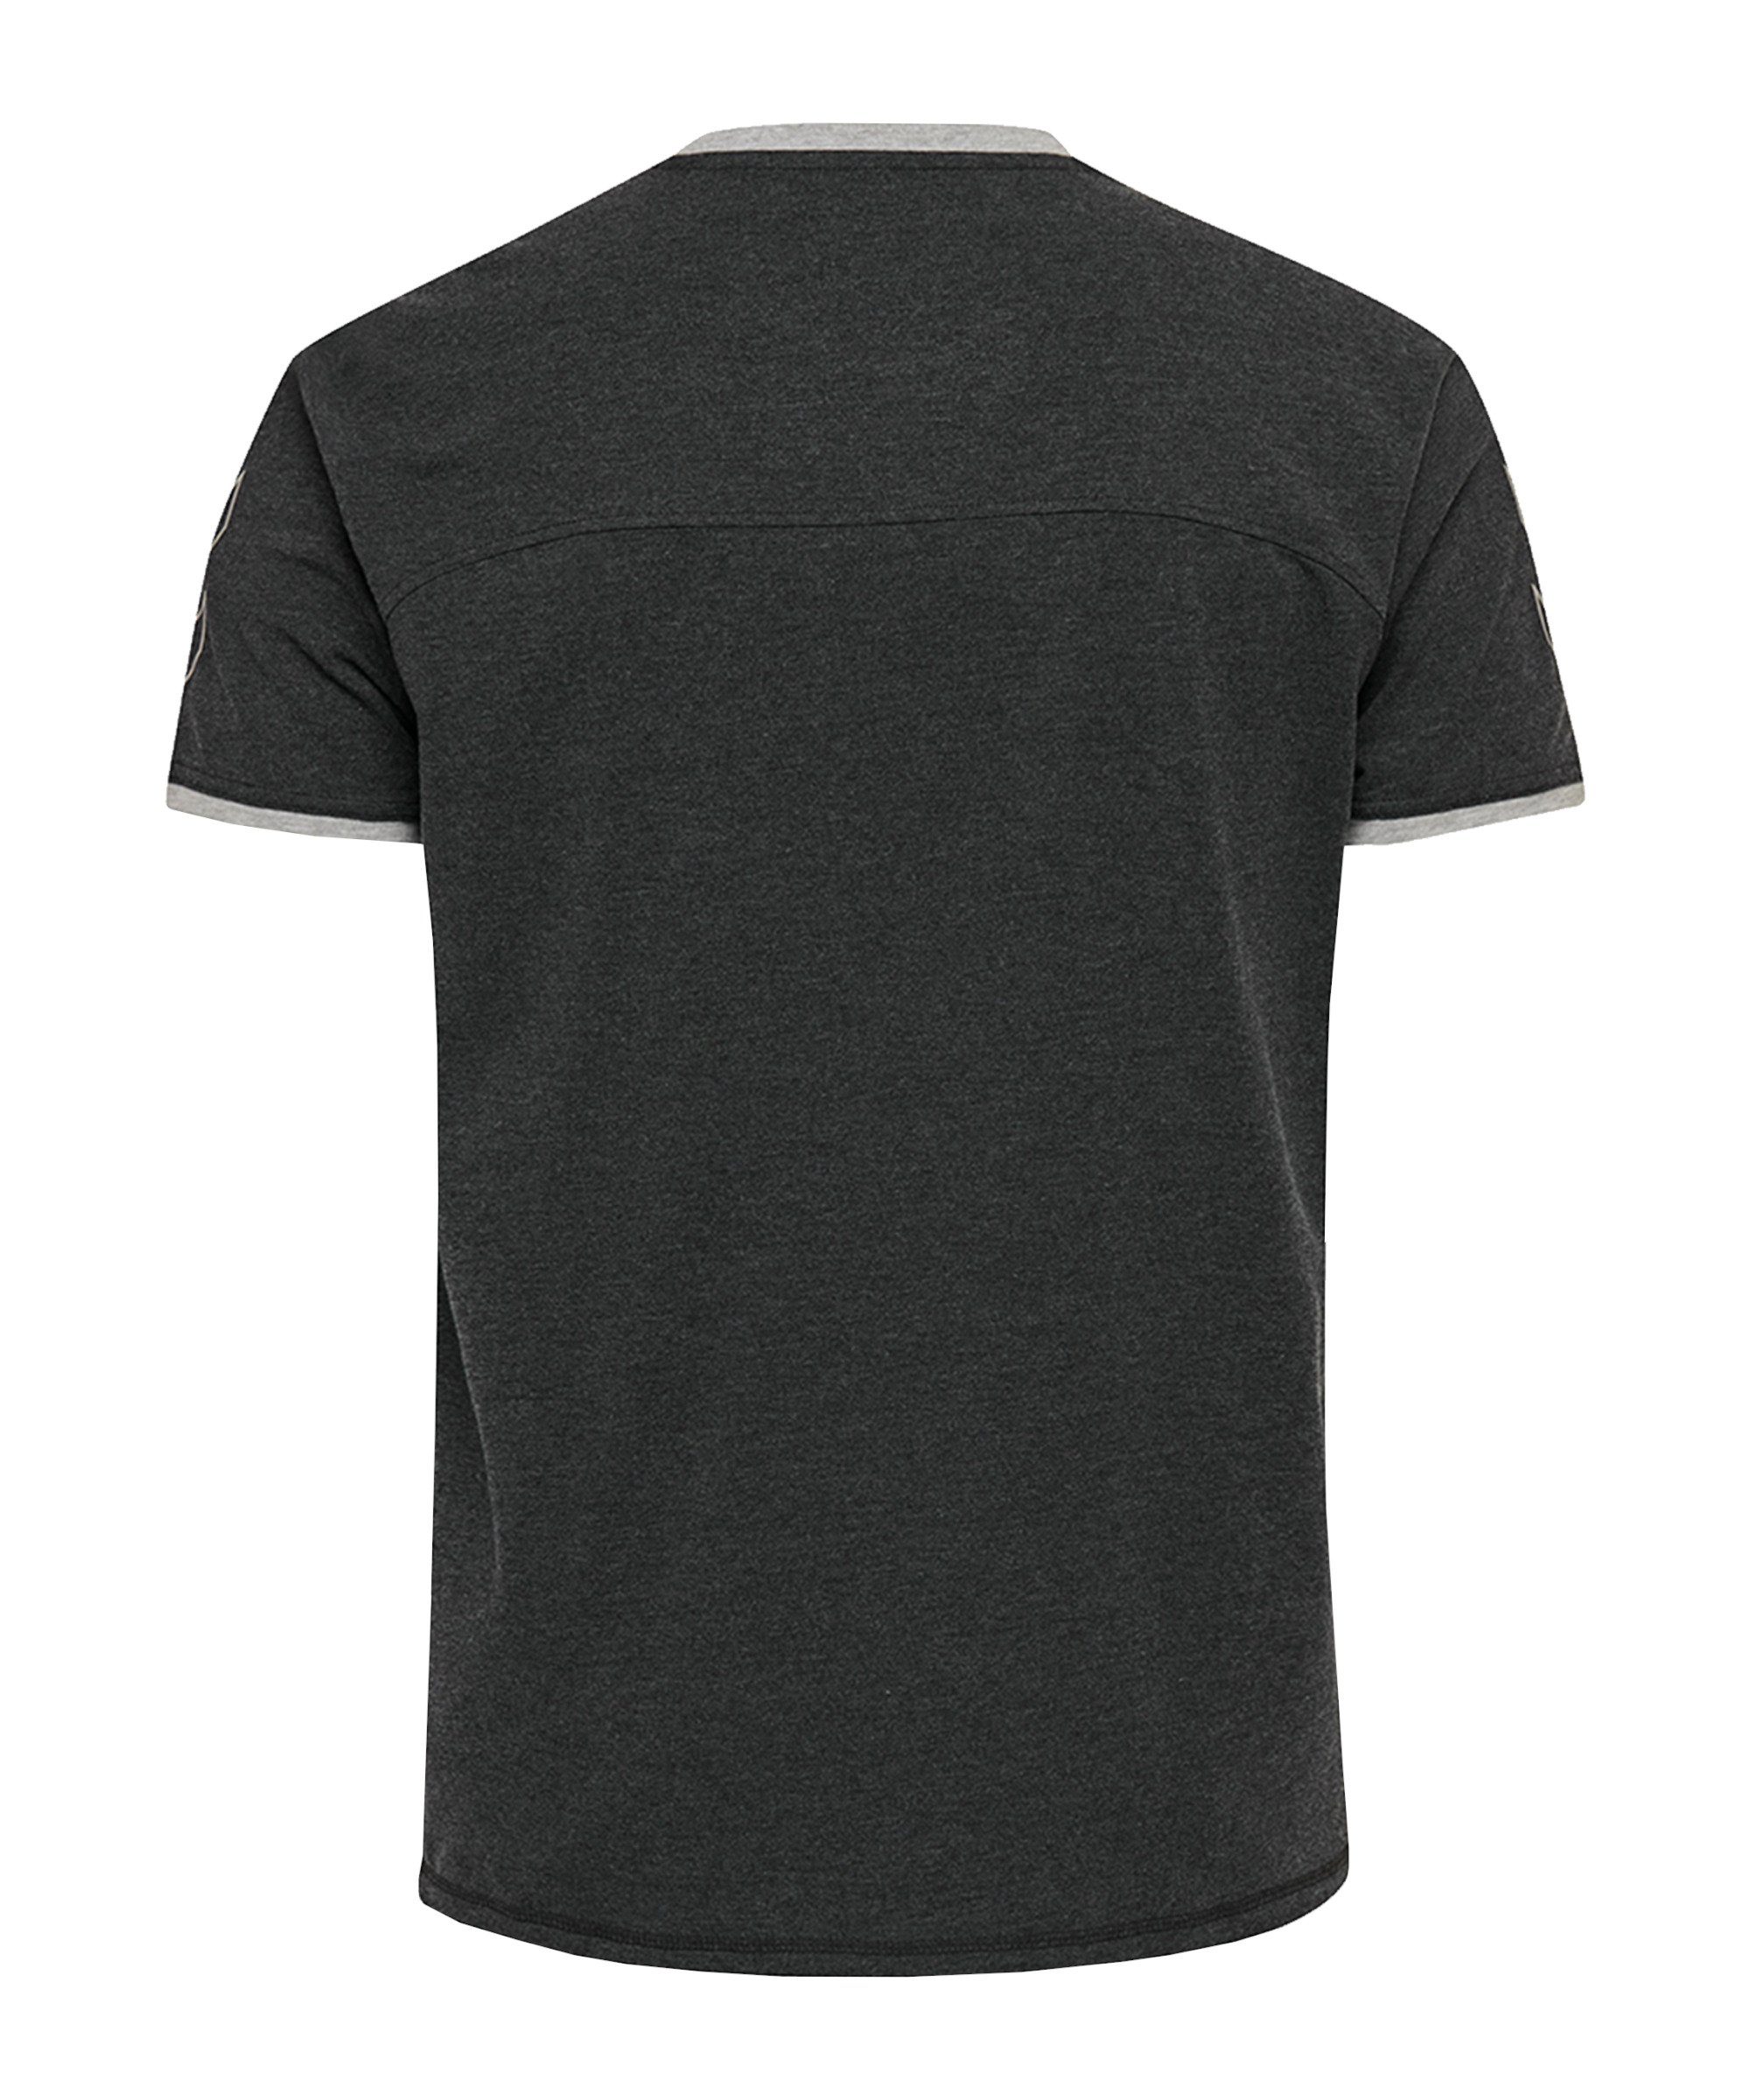 Cima hummel default T-Shirt T-Shirt schwarz